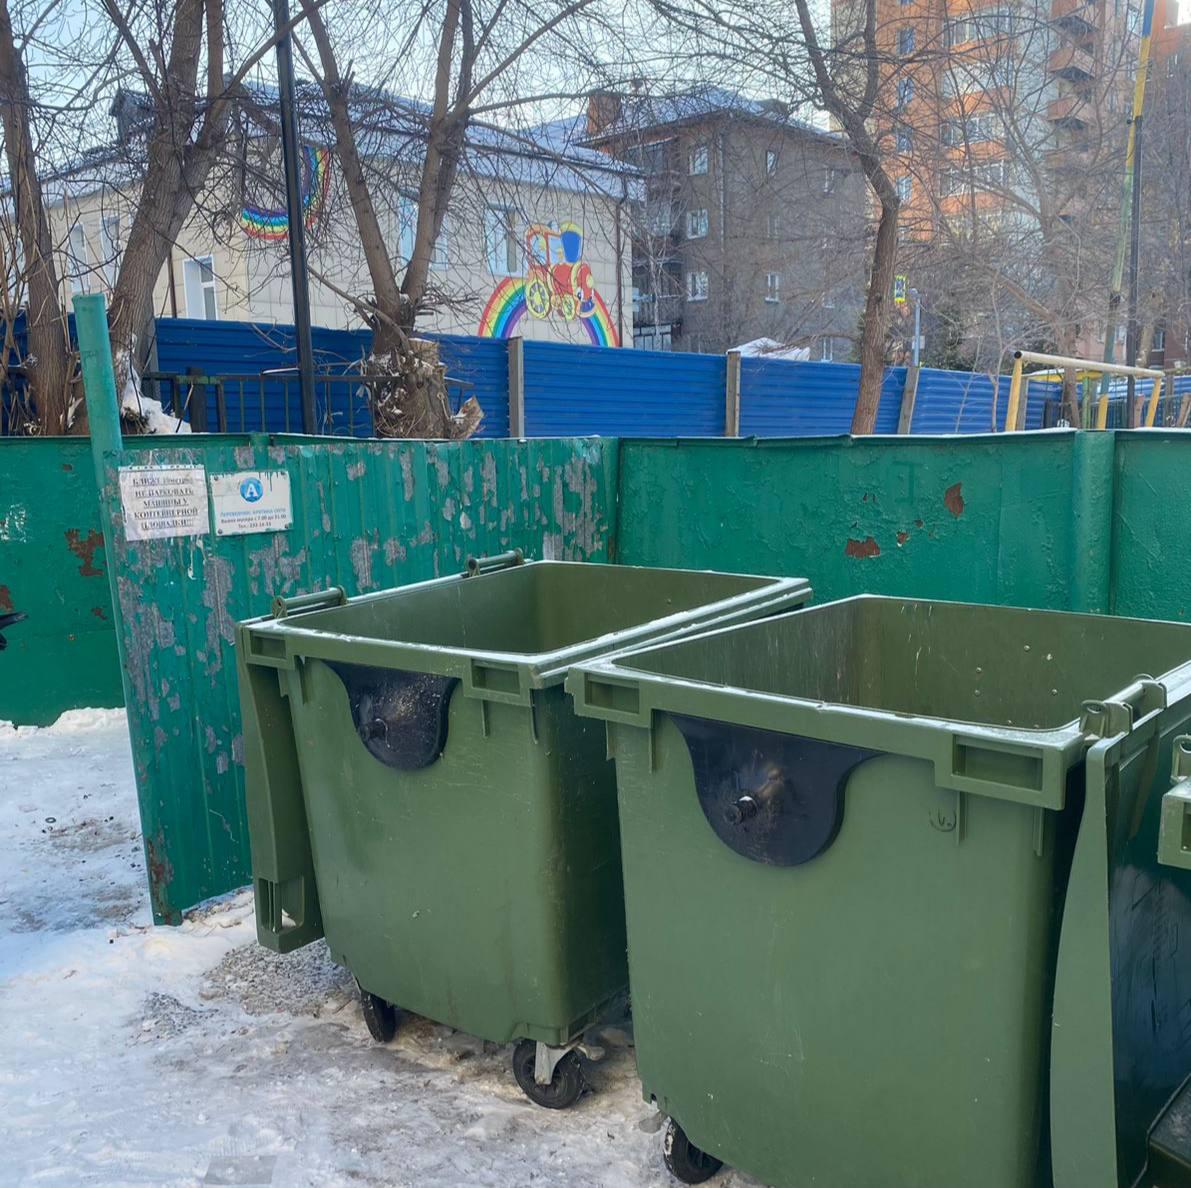 Фото Появилось видео, как мать несет младенца в пакете на мусорку в Новосибирске 2